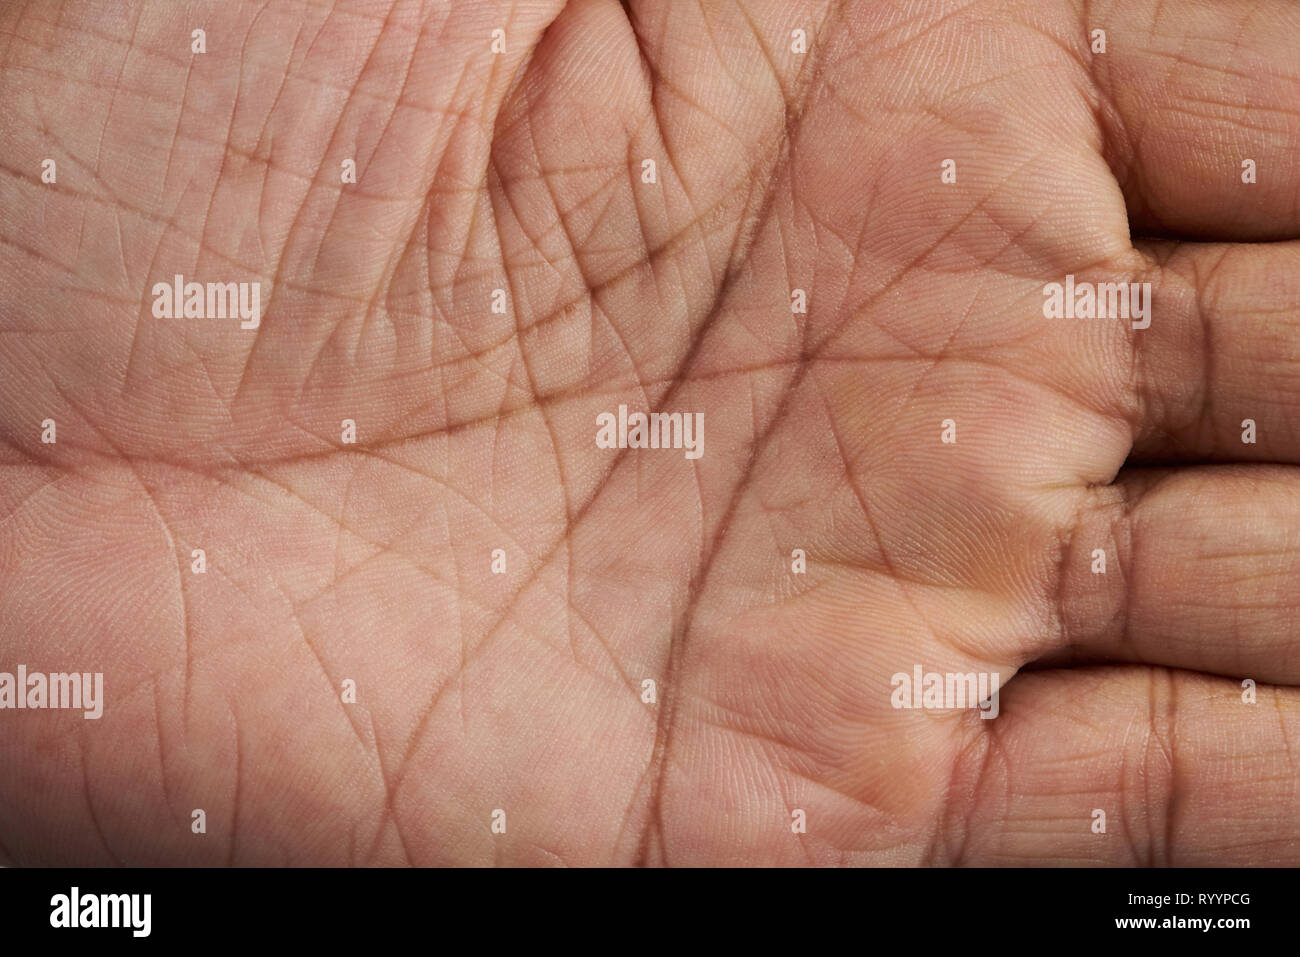 Lignes sur main humaine vue en gros palm Banque D'Images